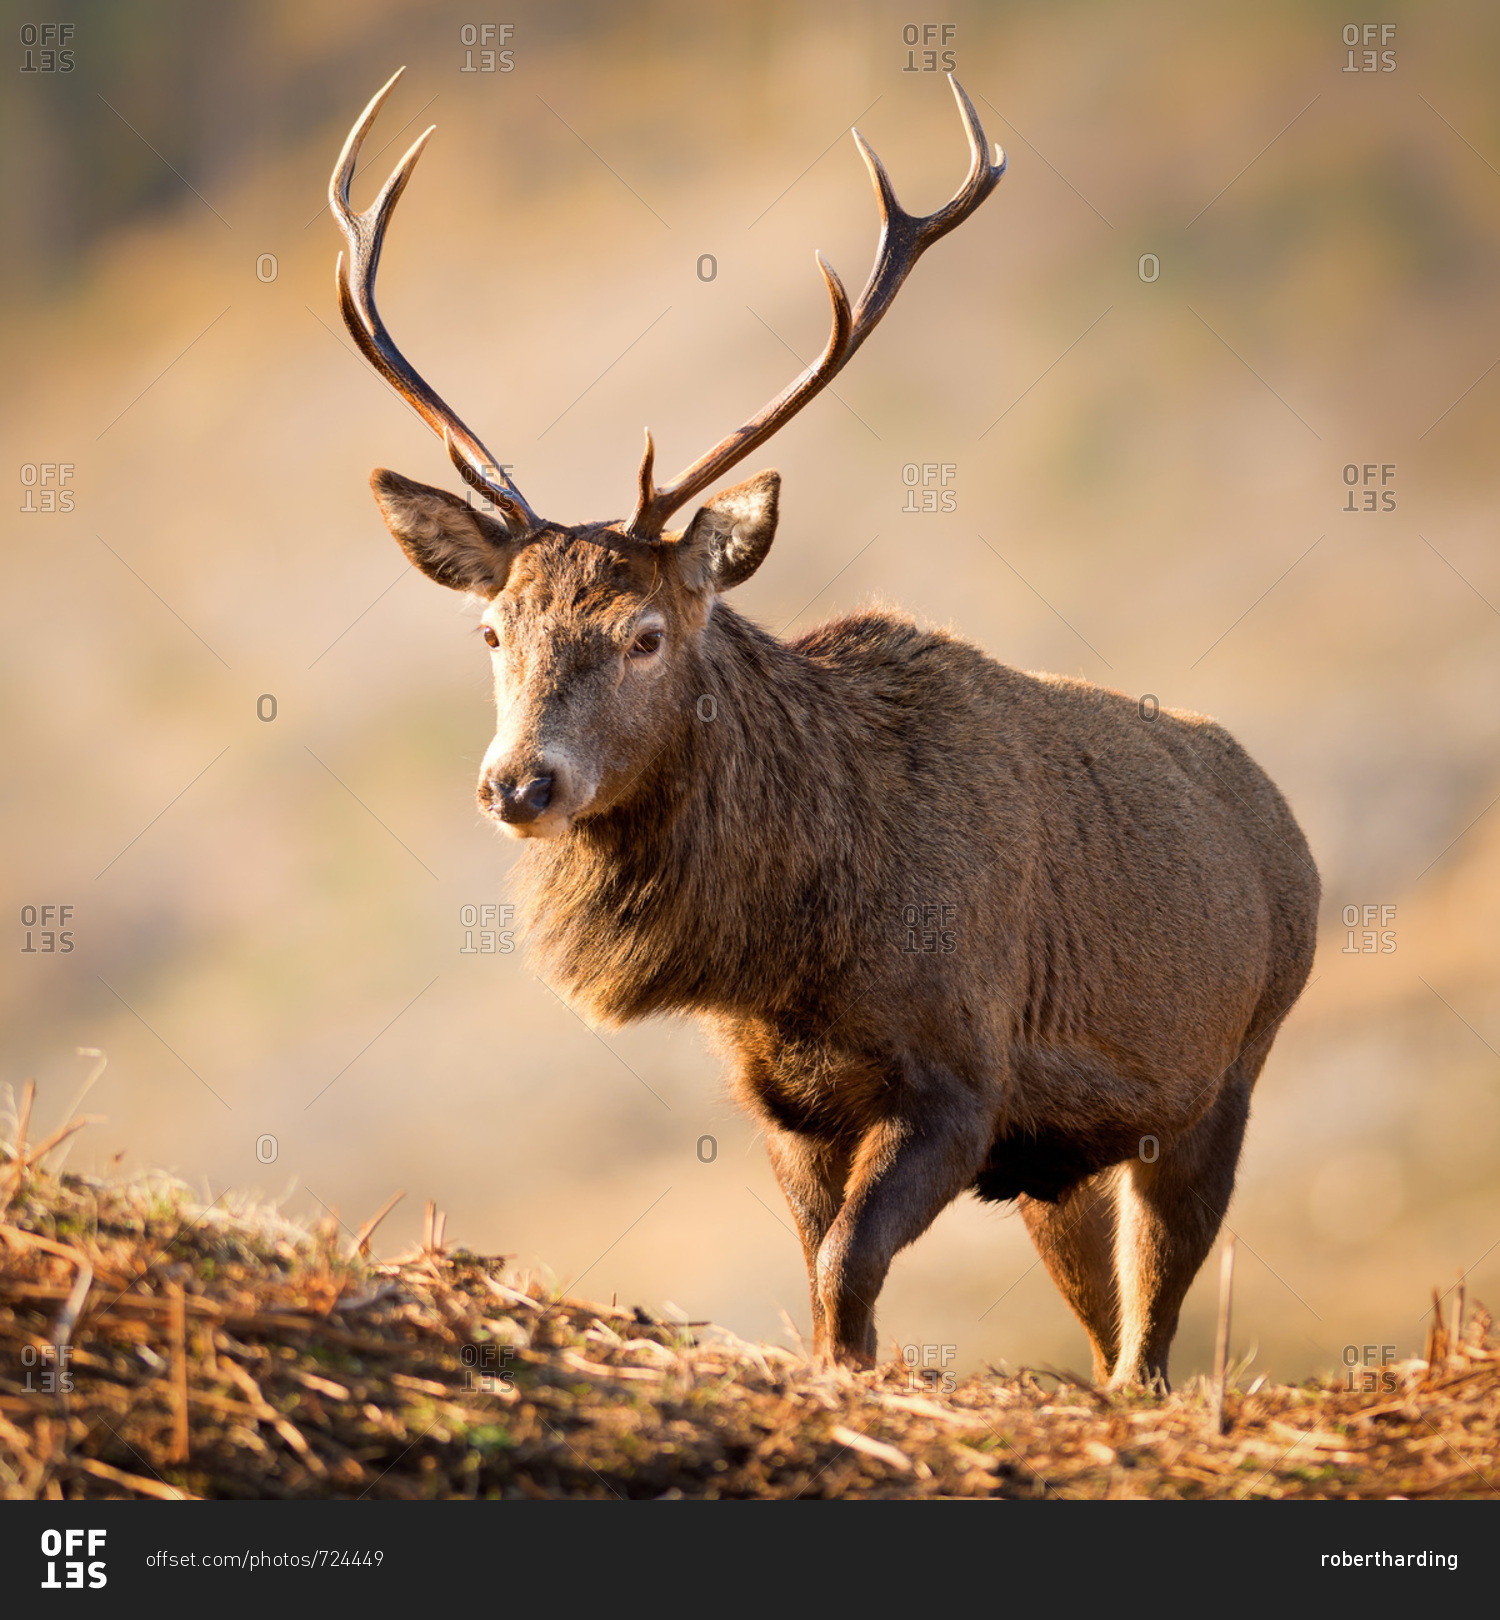 Red deer stag, Glen Etive, Highlands, Scotland, United Kingdom, Europe